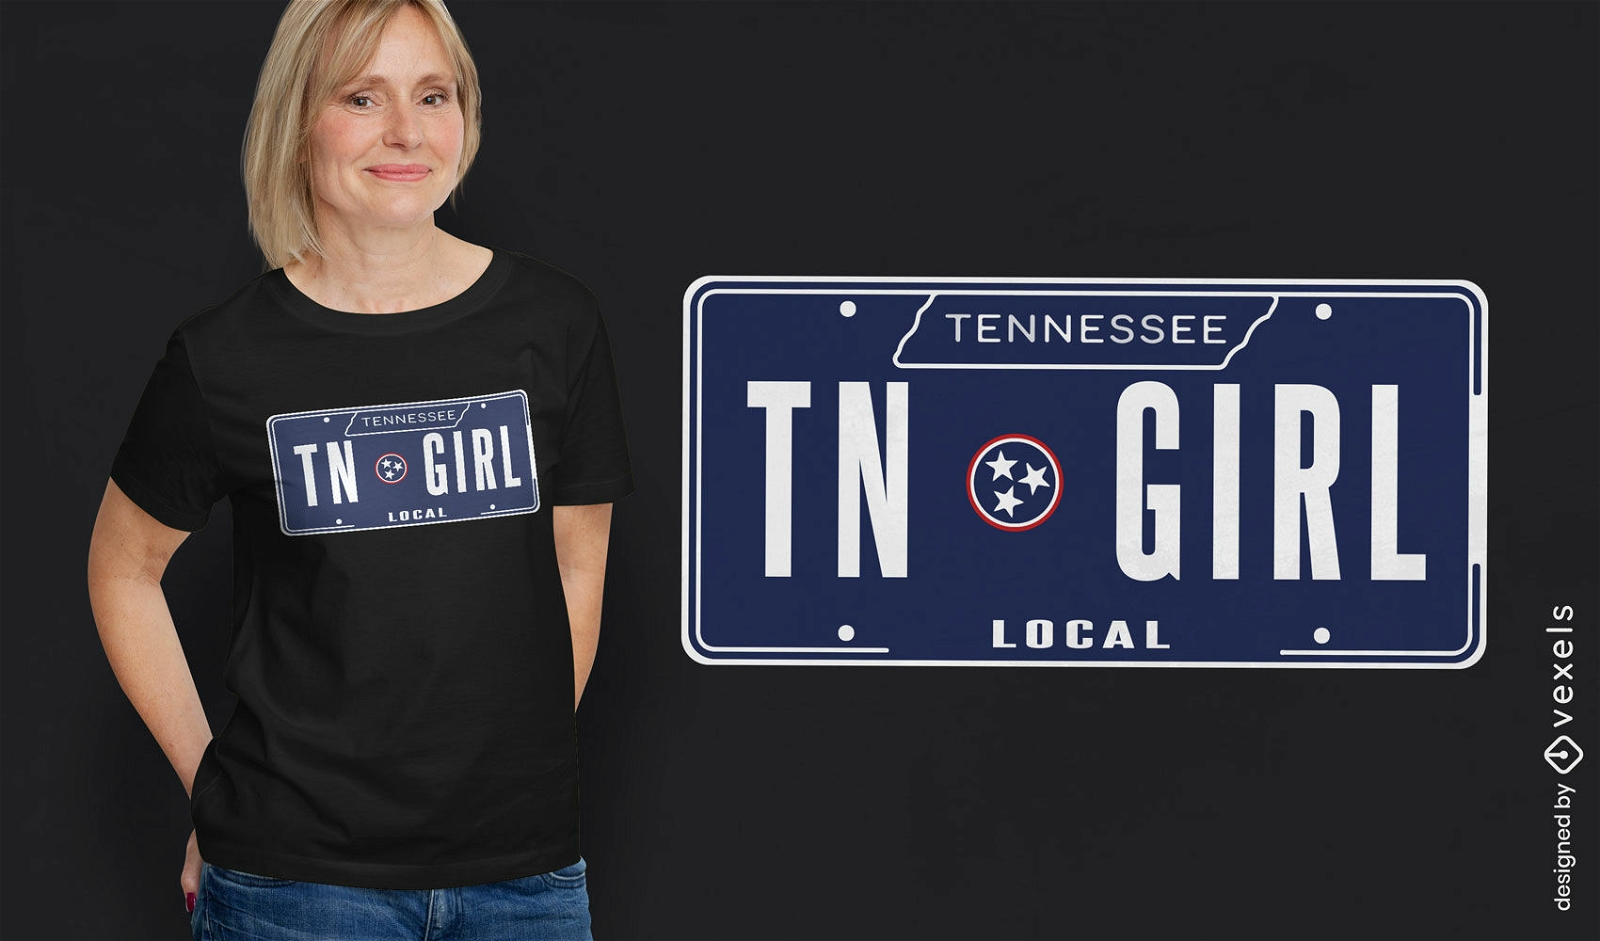 Dise?o de camiseta con matr?cula de Tennessee.